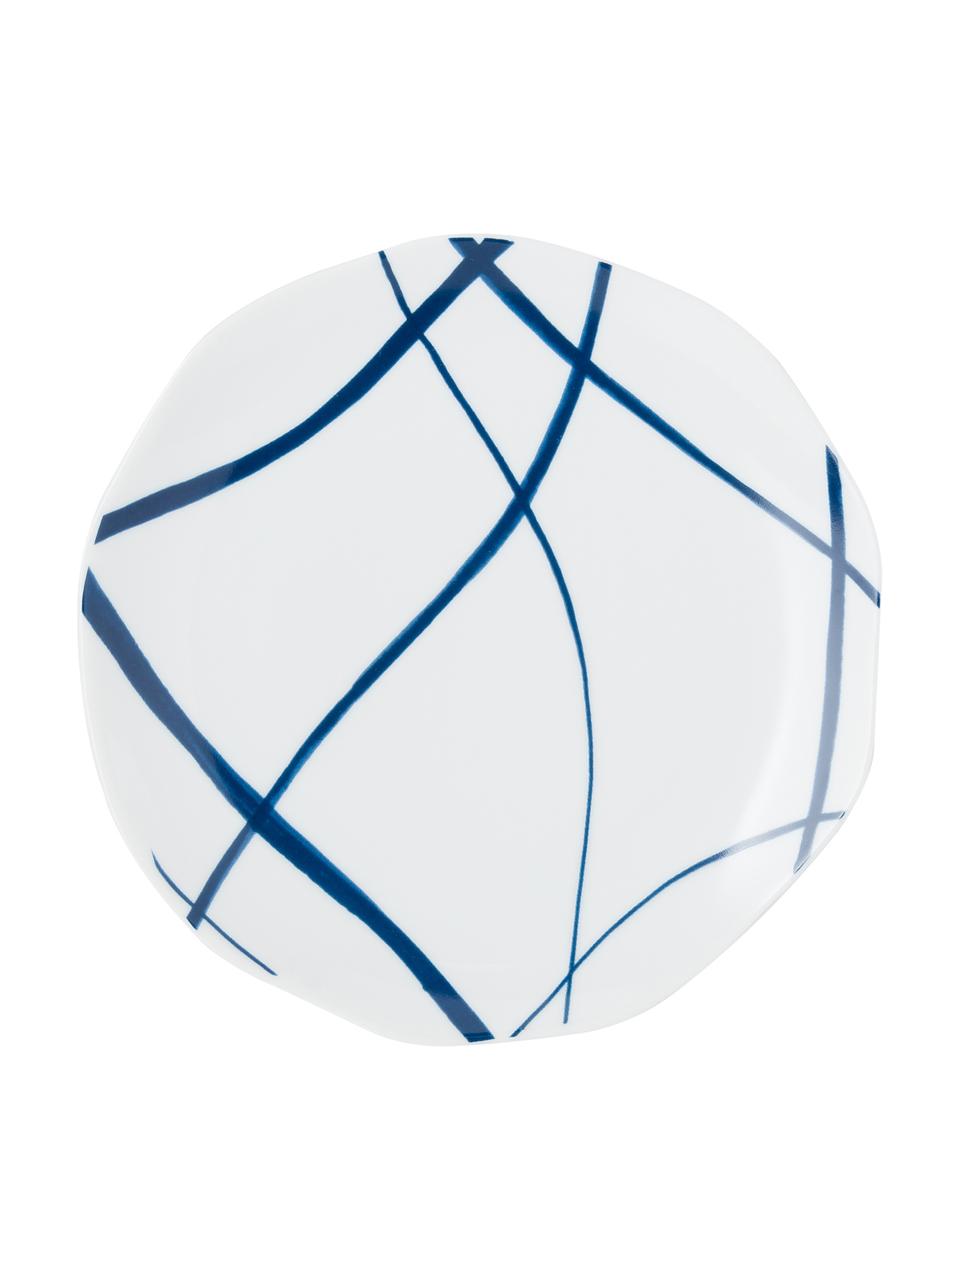 Platos postre Vassoio, 6 uds., Porcelana, Azul, blanco, Ø 20 cm